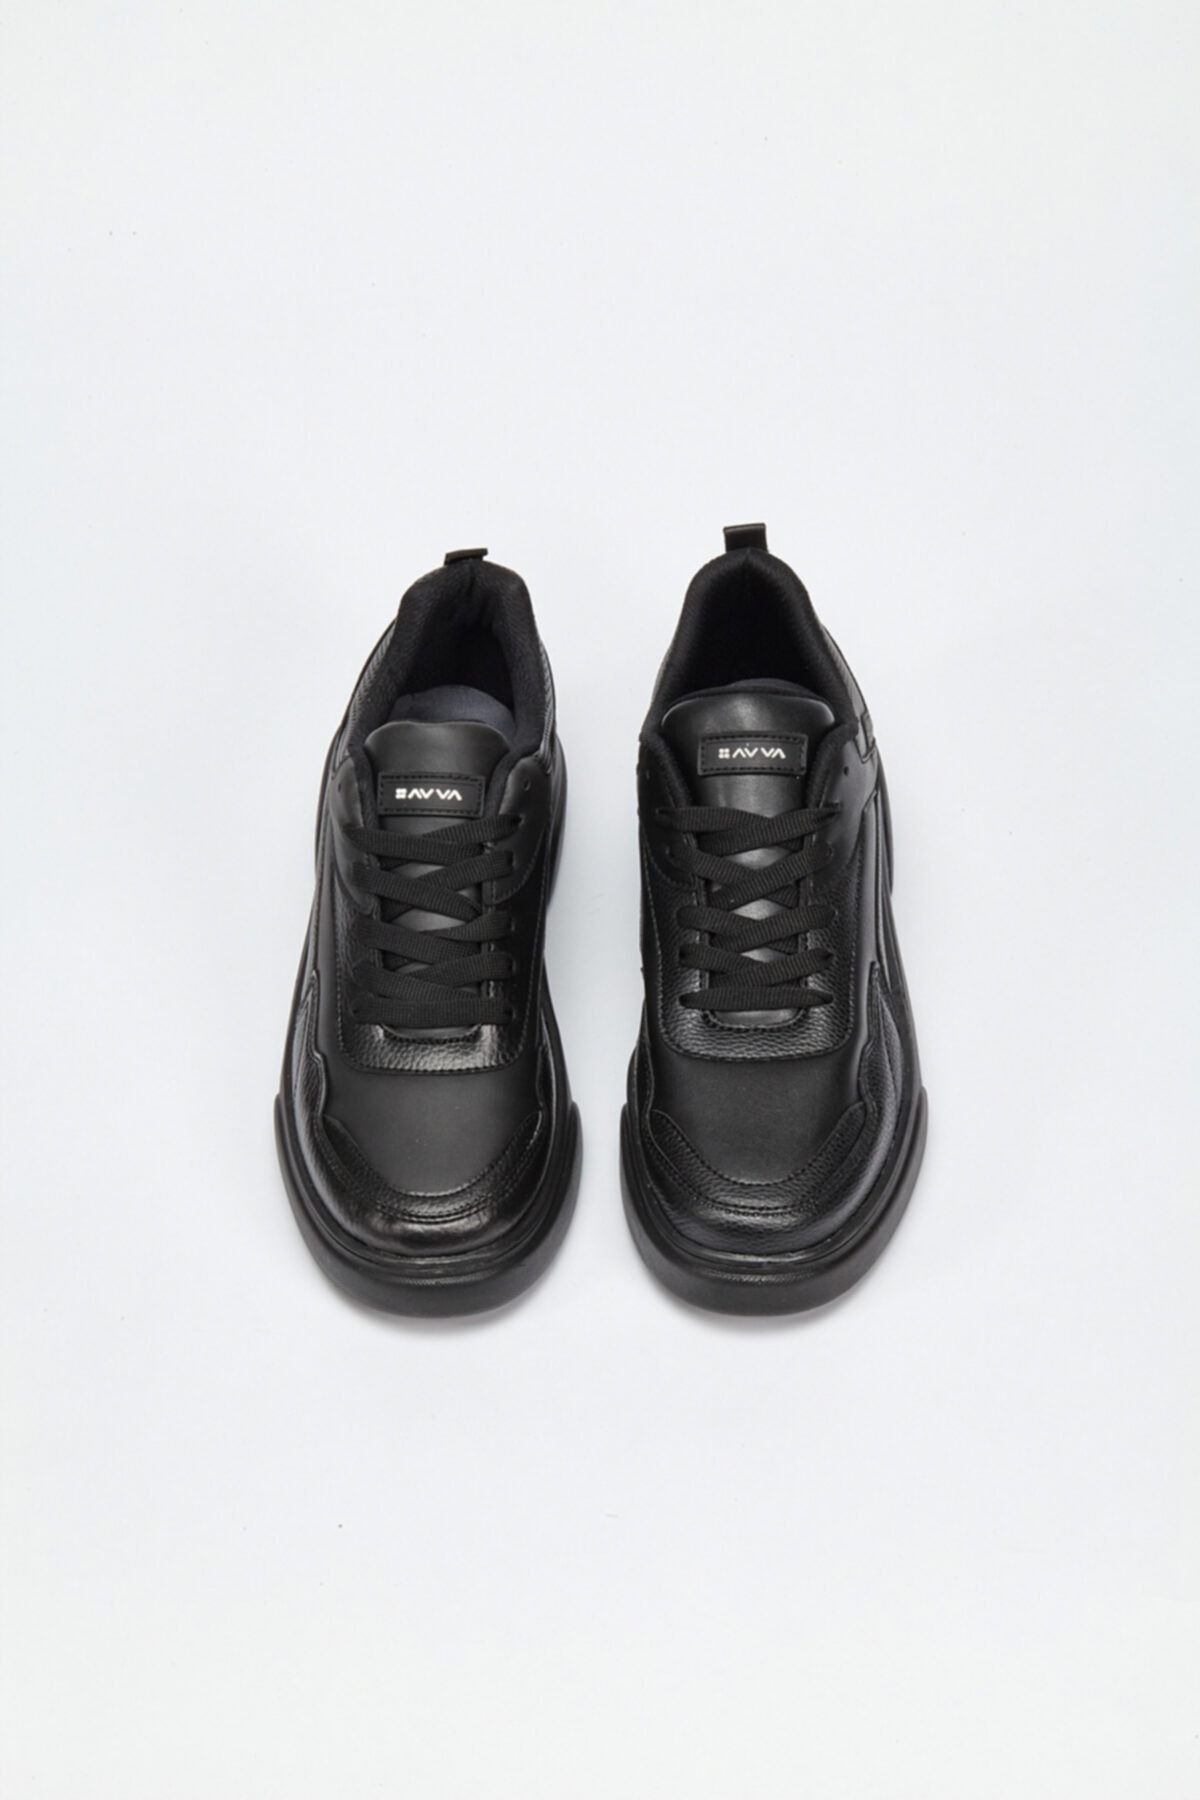 Avva Erkek Siyah Spor Ayakkabı A02y8019